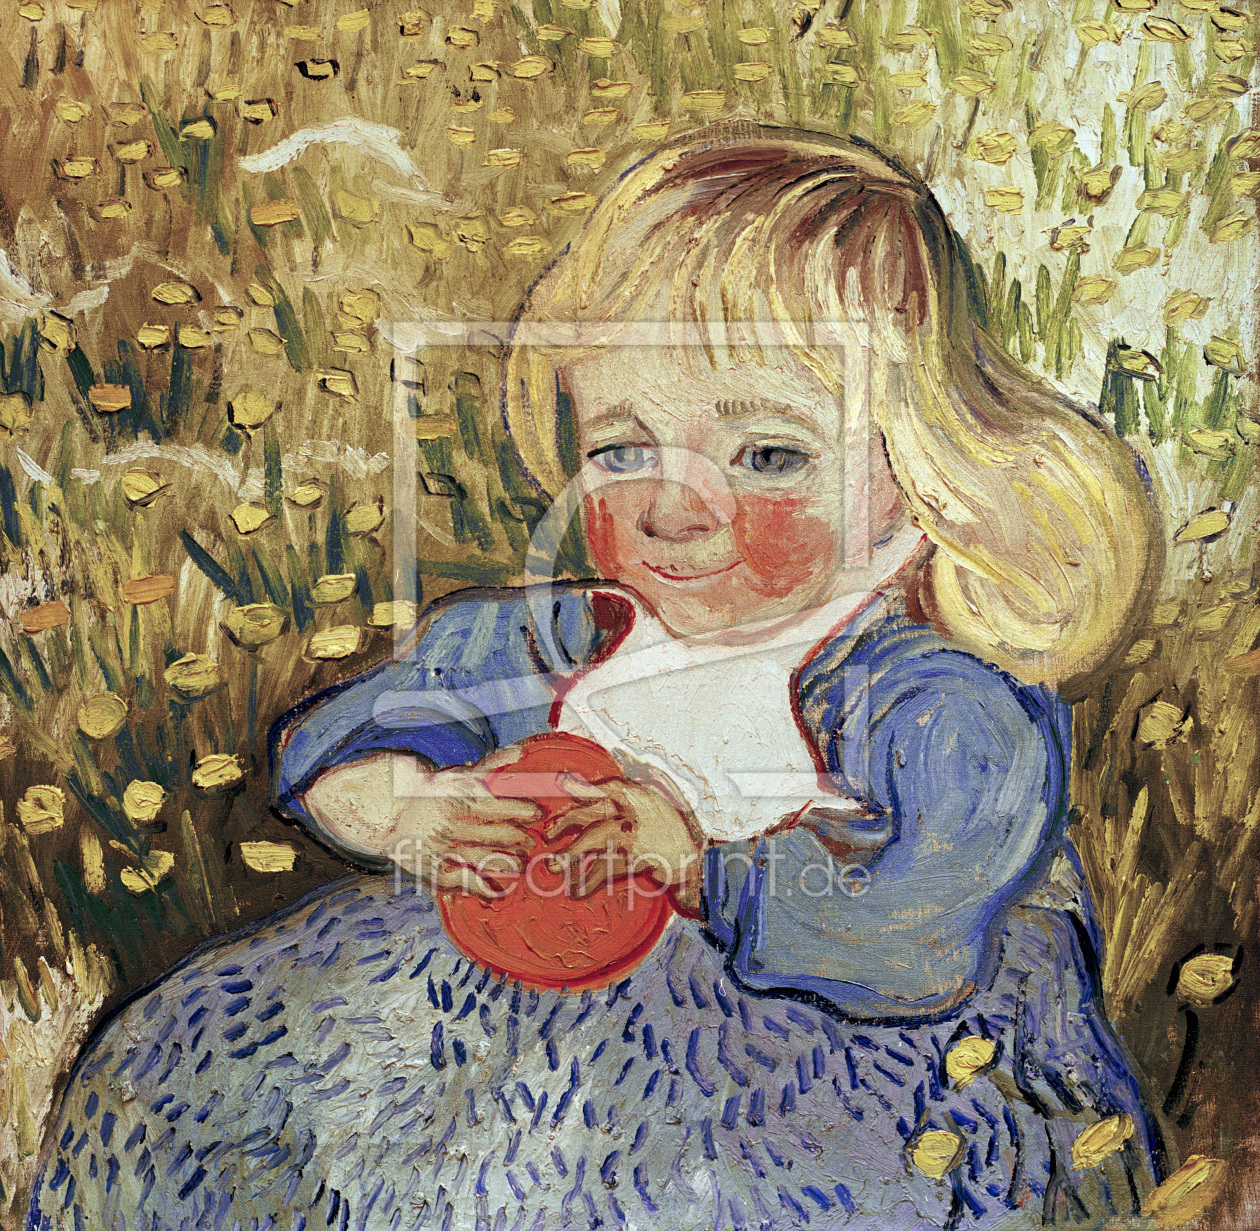 Bild-Nr.: 30003396 van Gogh / Child with orange / 1890 erstellt von van Gogh, Vincent